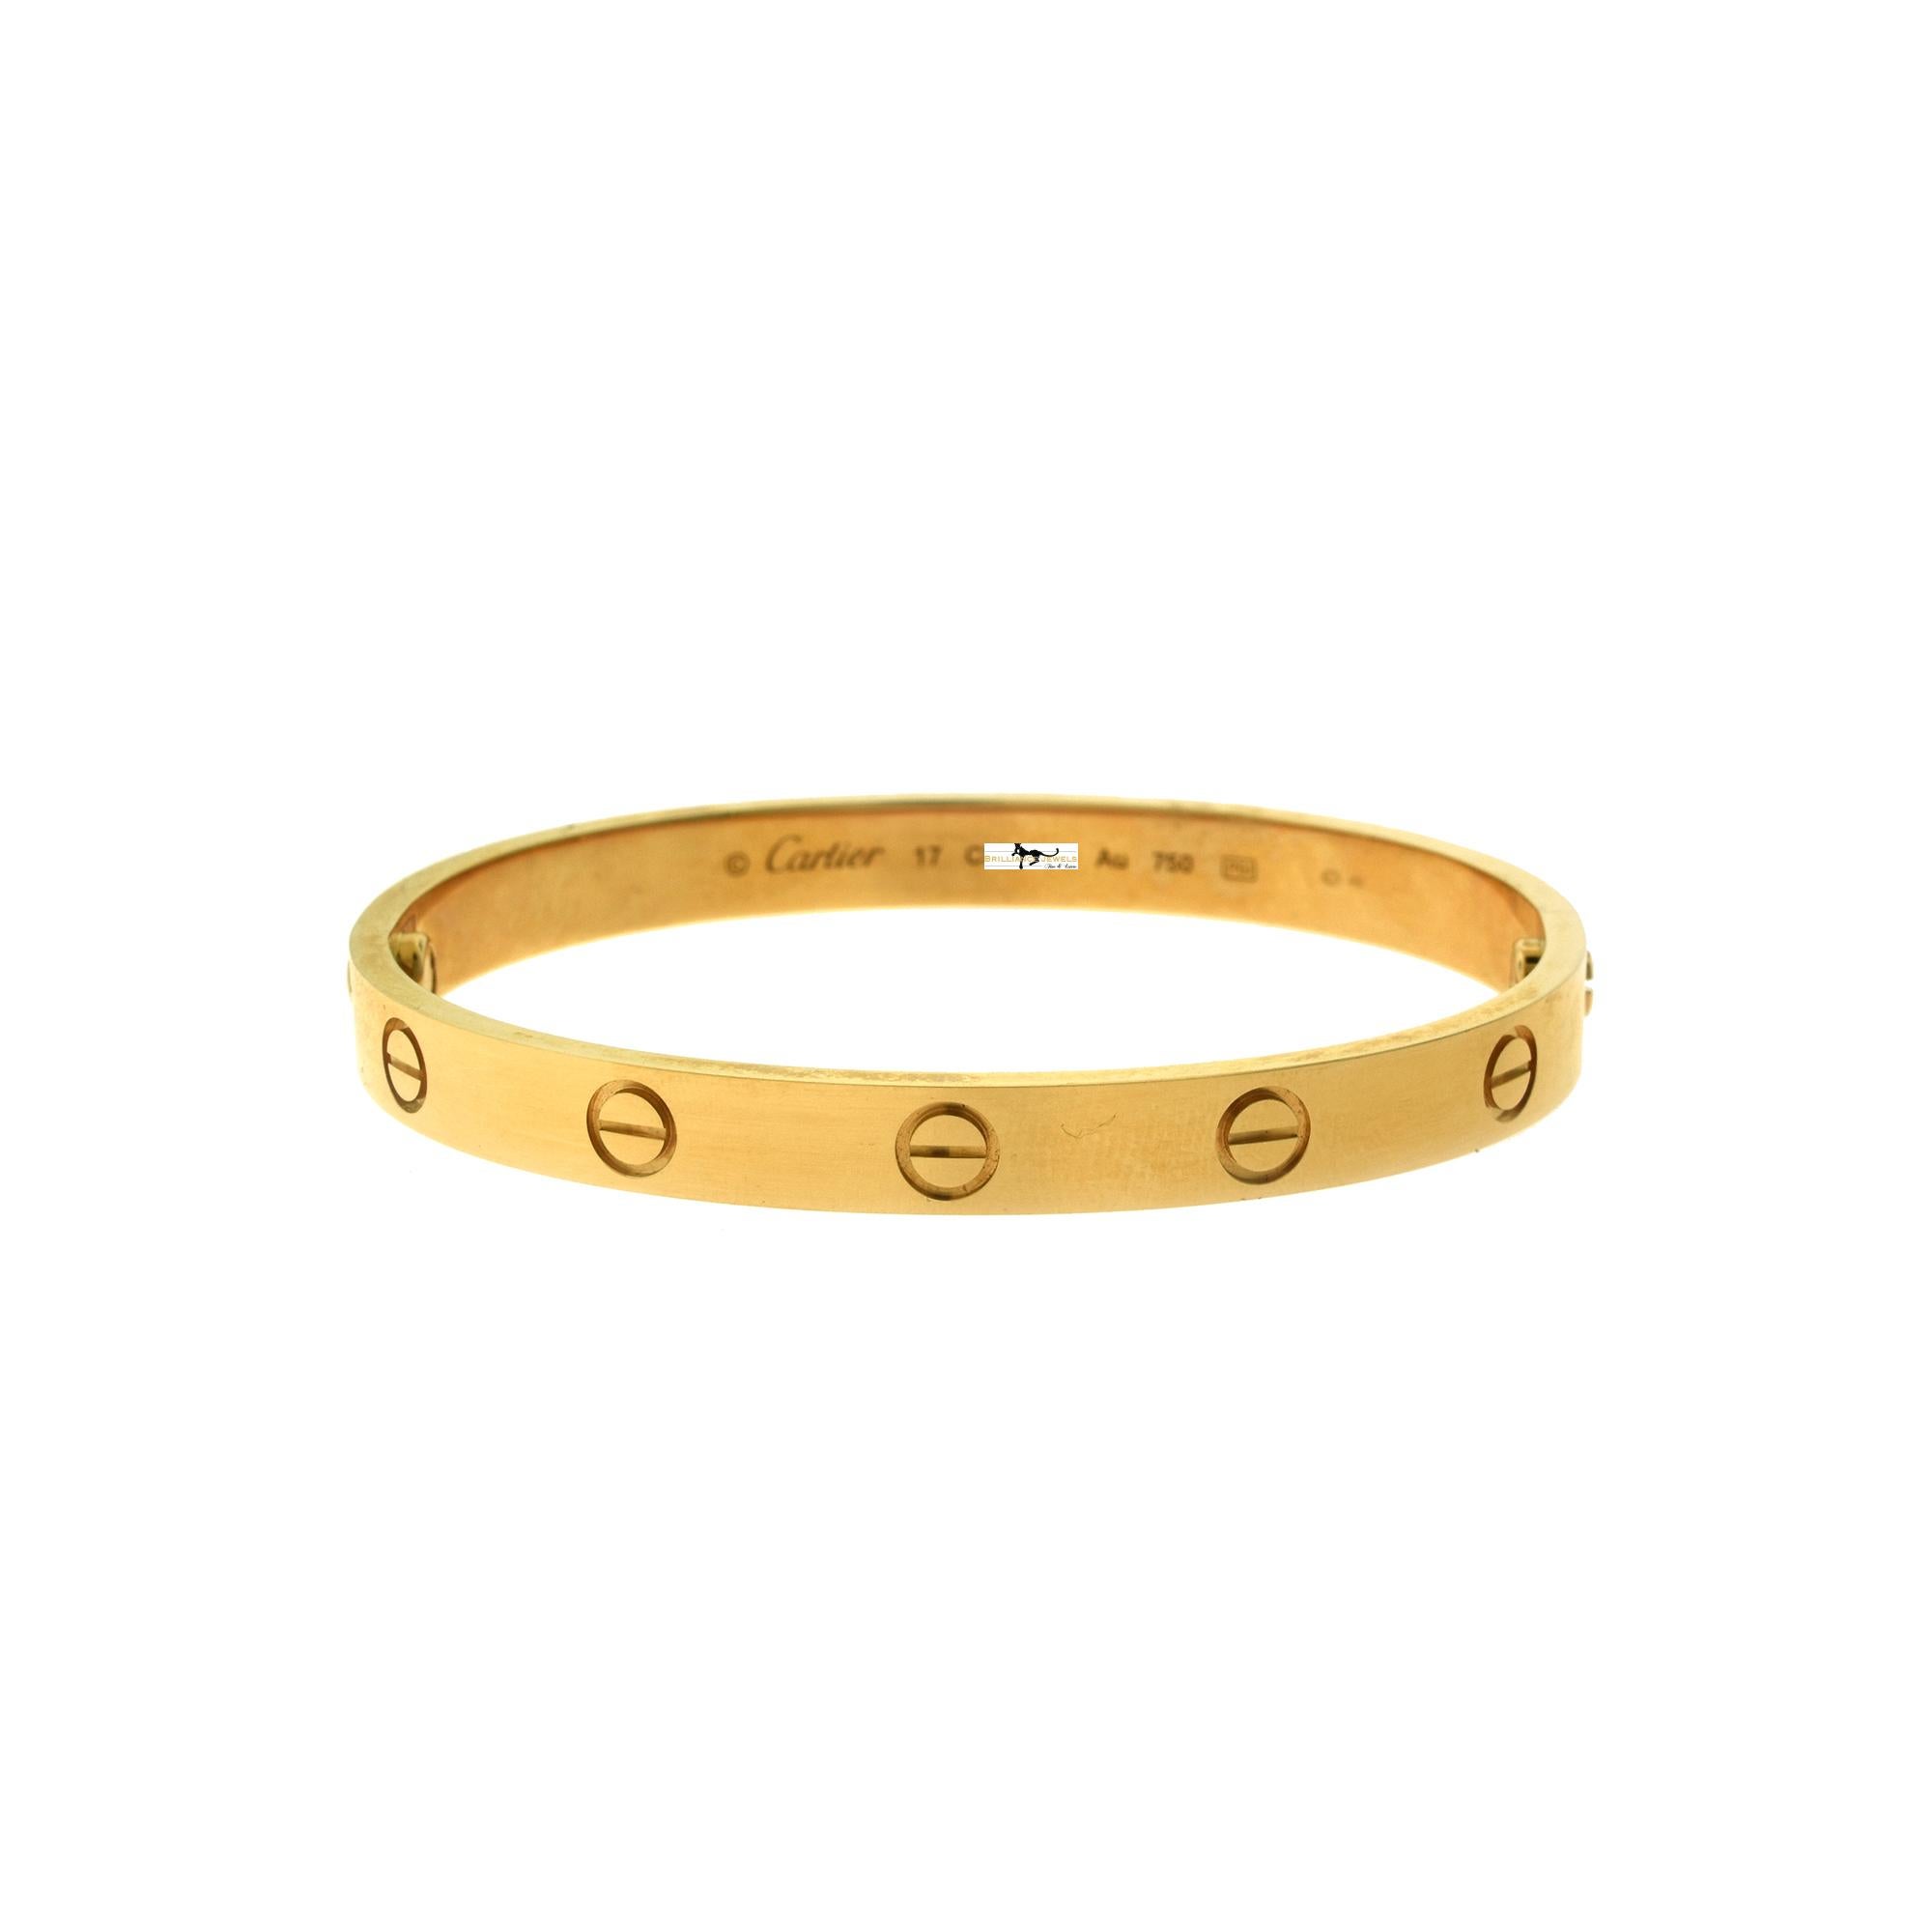 rose gold bangle bracelet